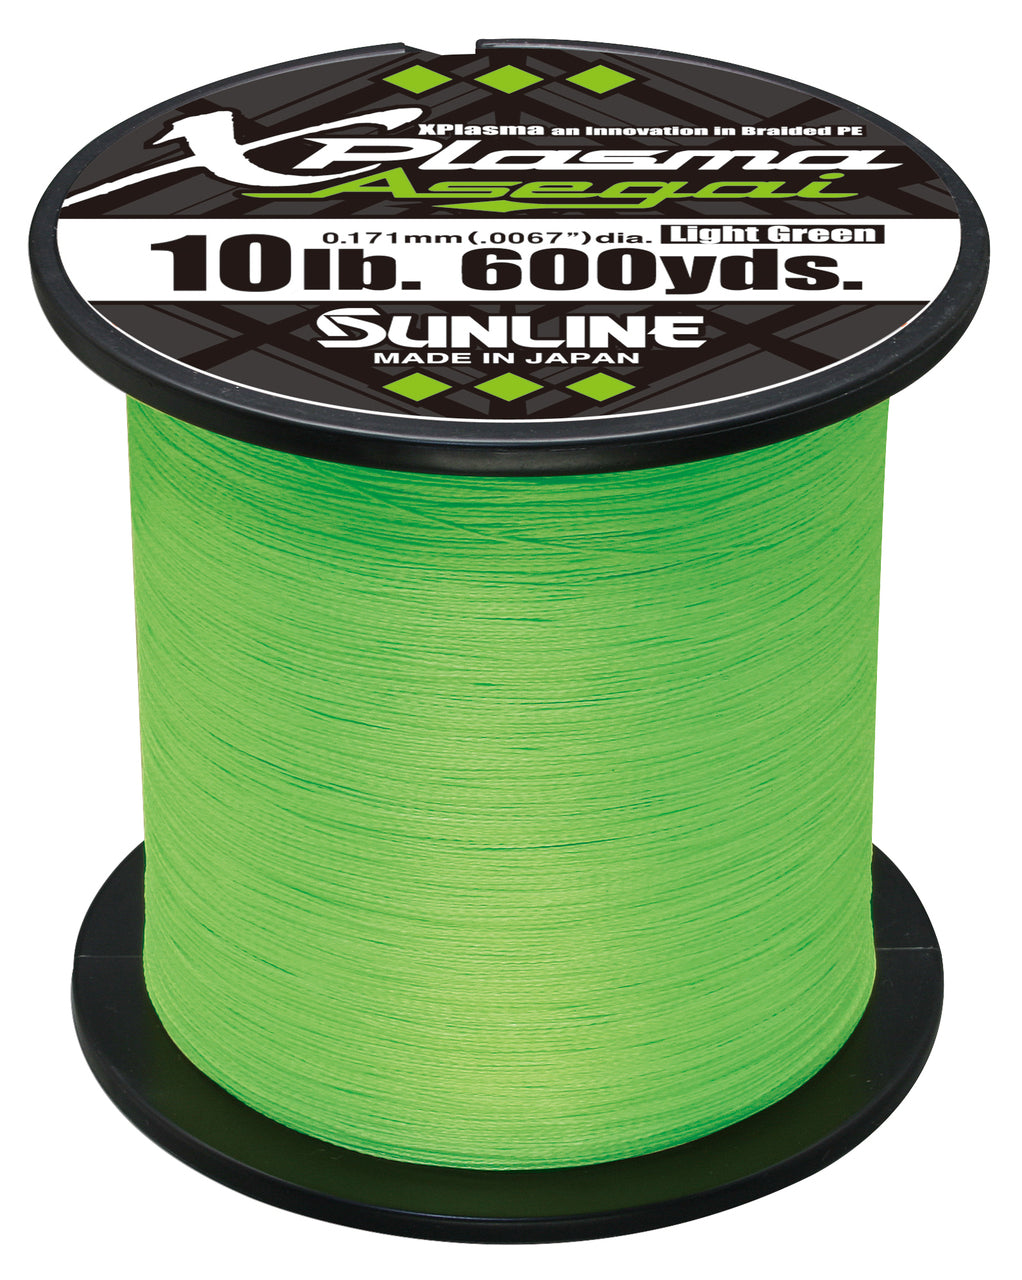 Sunline Xplasma Asegai 18lb 330yd Dark Green Braided Line